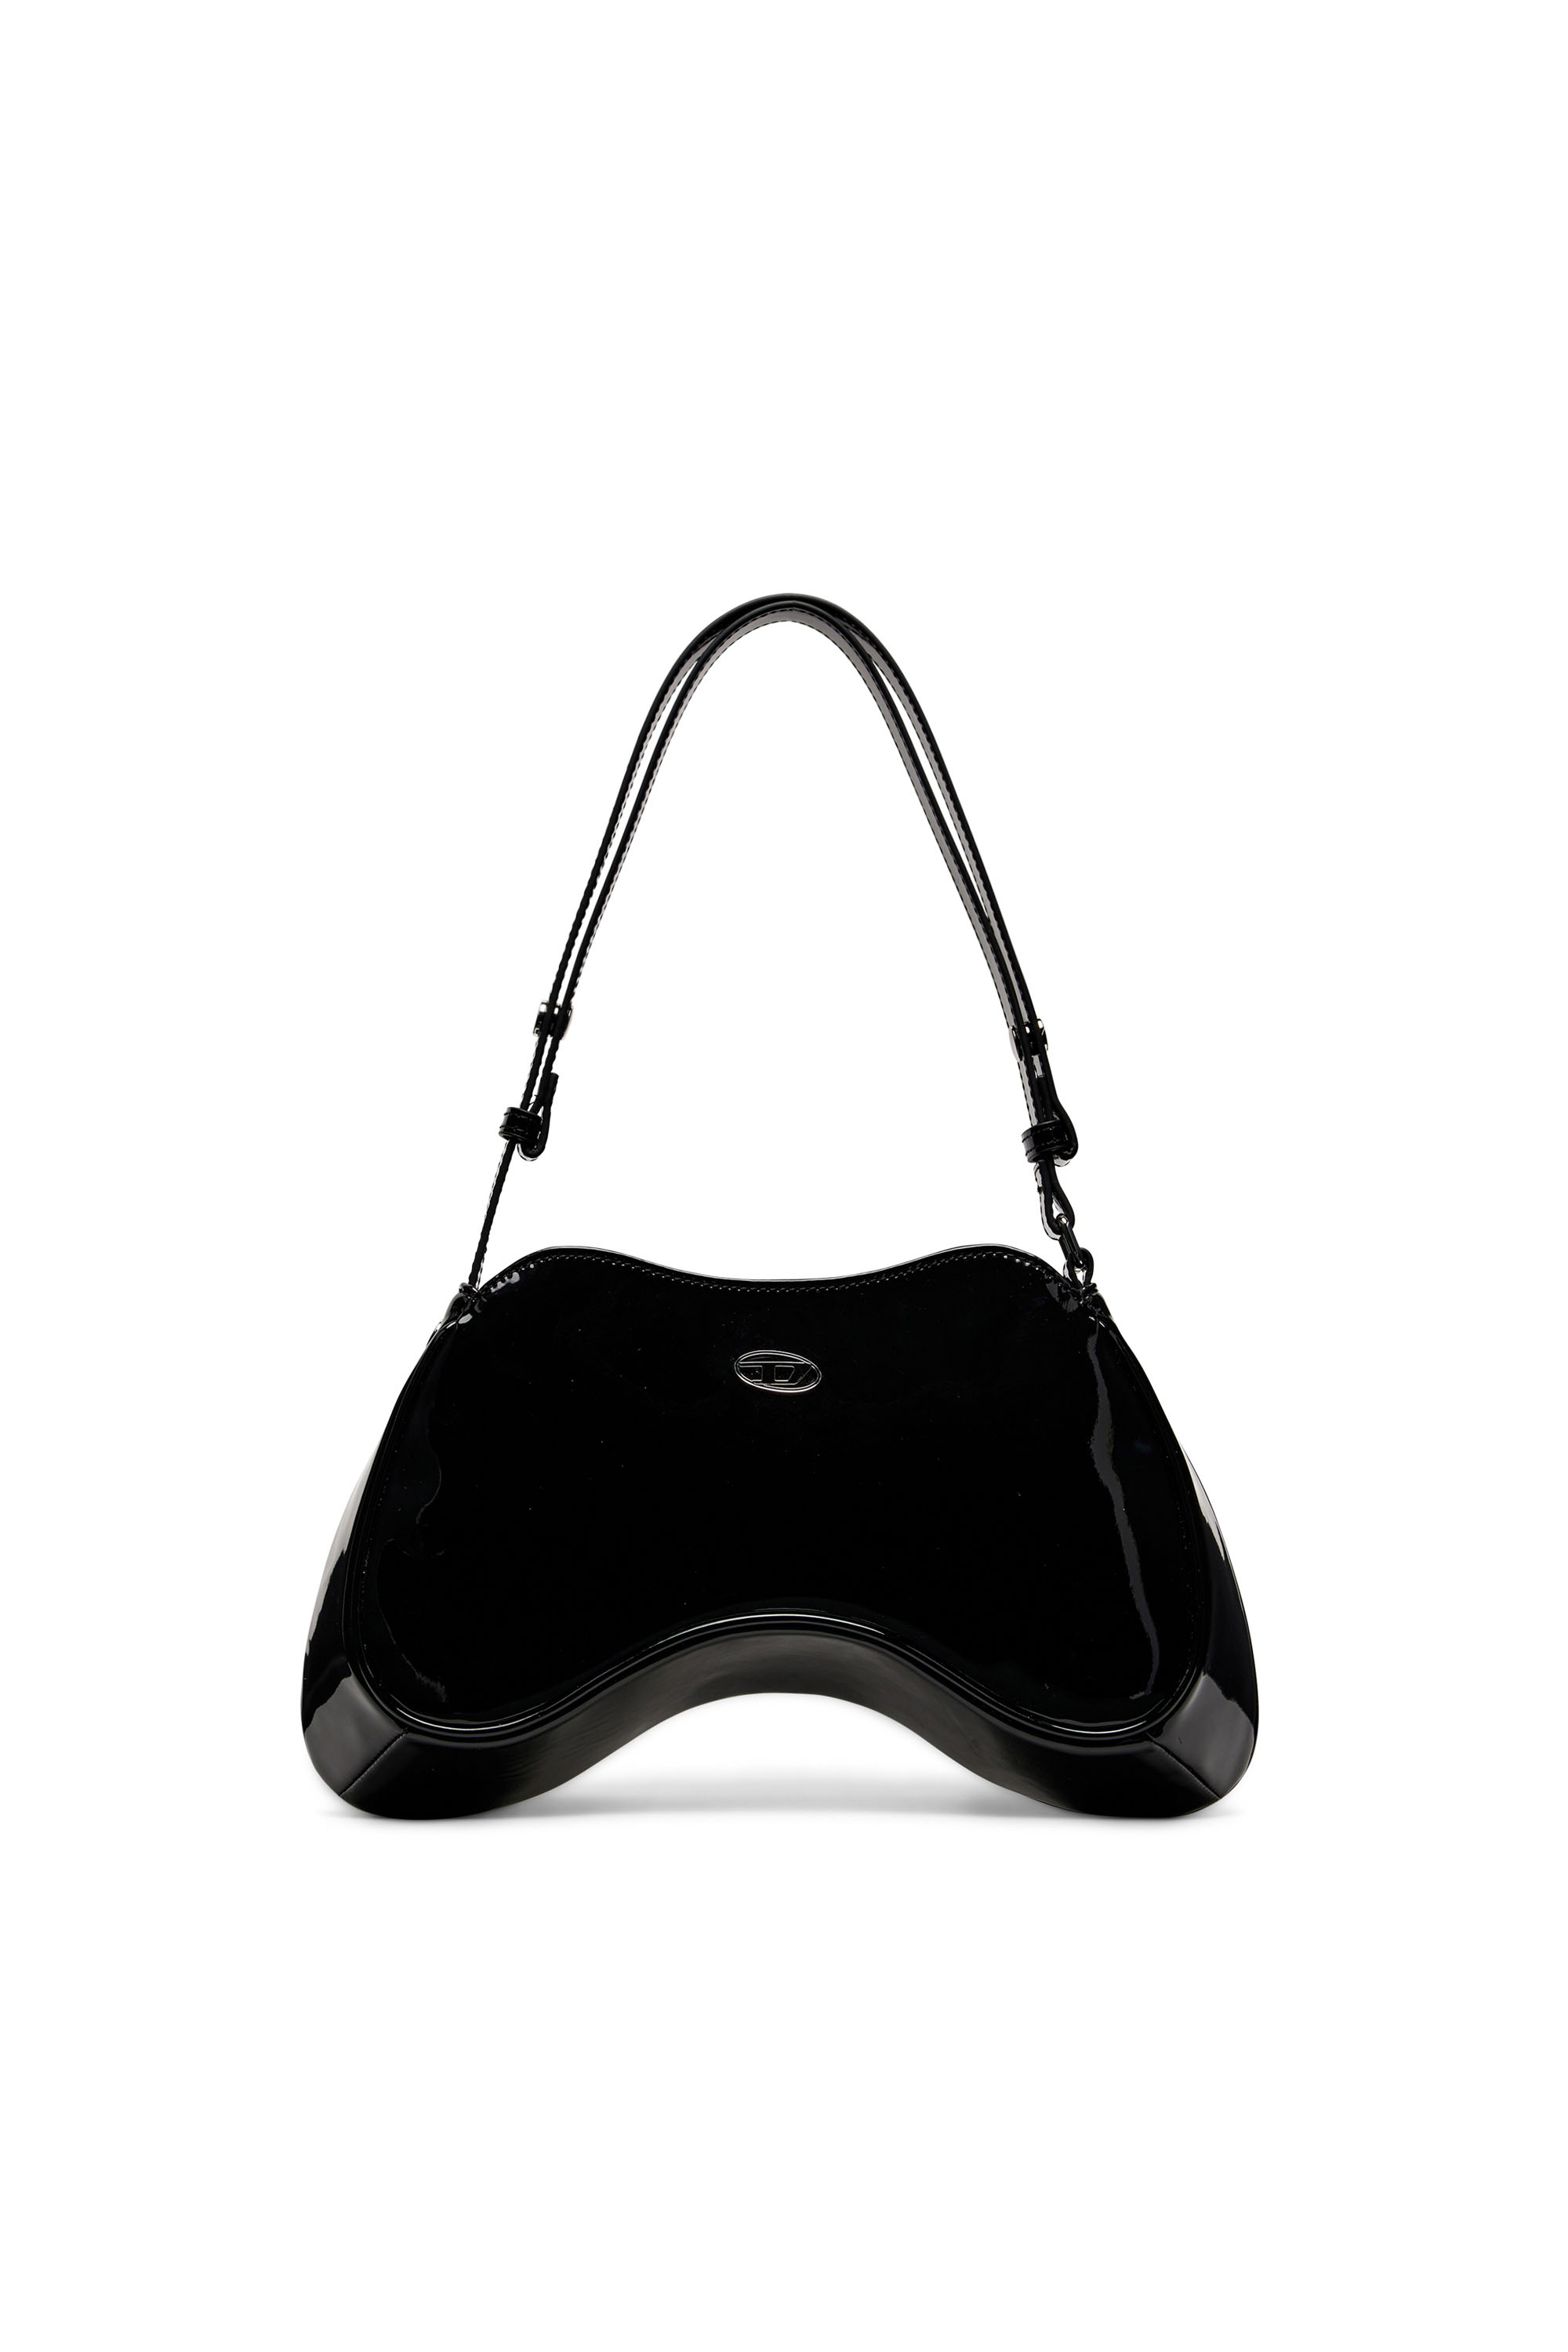 Diesel - PLAY SHOULDER, Female Play-Glossy shoulder bag in Black - Image 1